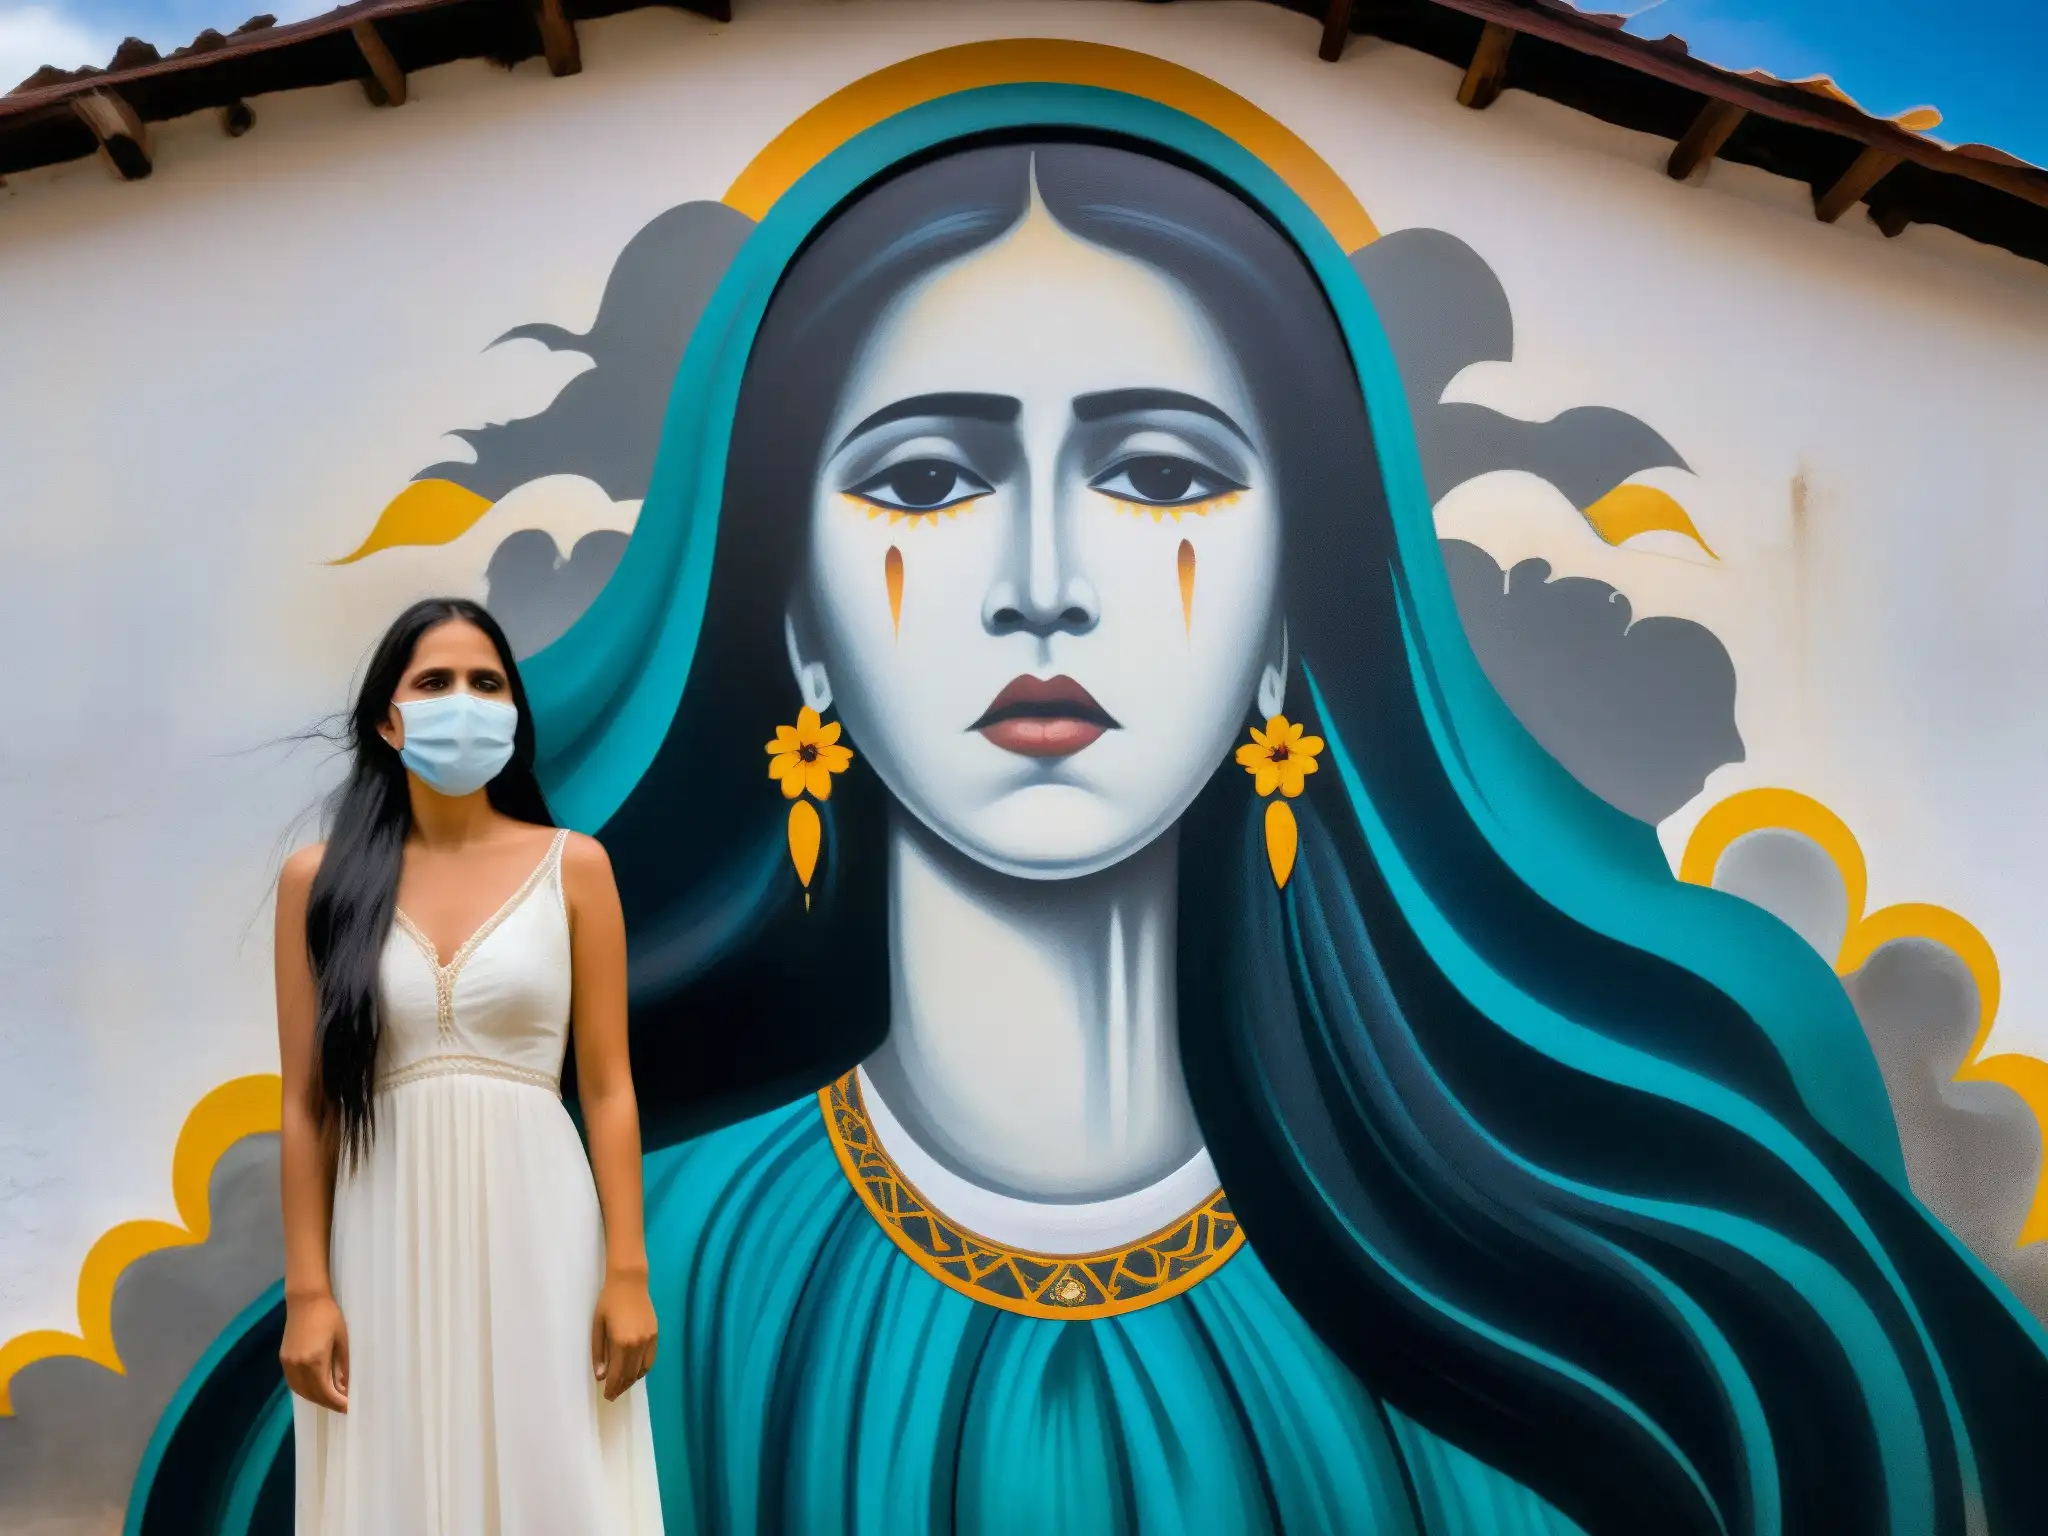 Una impresionante pintura mural de La Llorona en un pueblo mexicano, evocando la conexión entre La Llorona y estrés postraumático